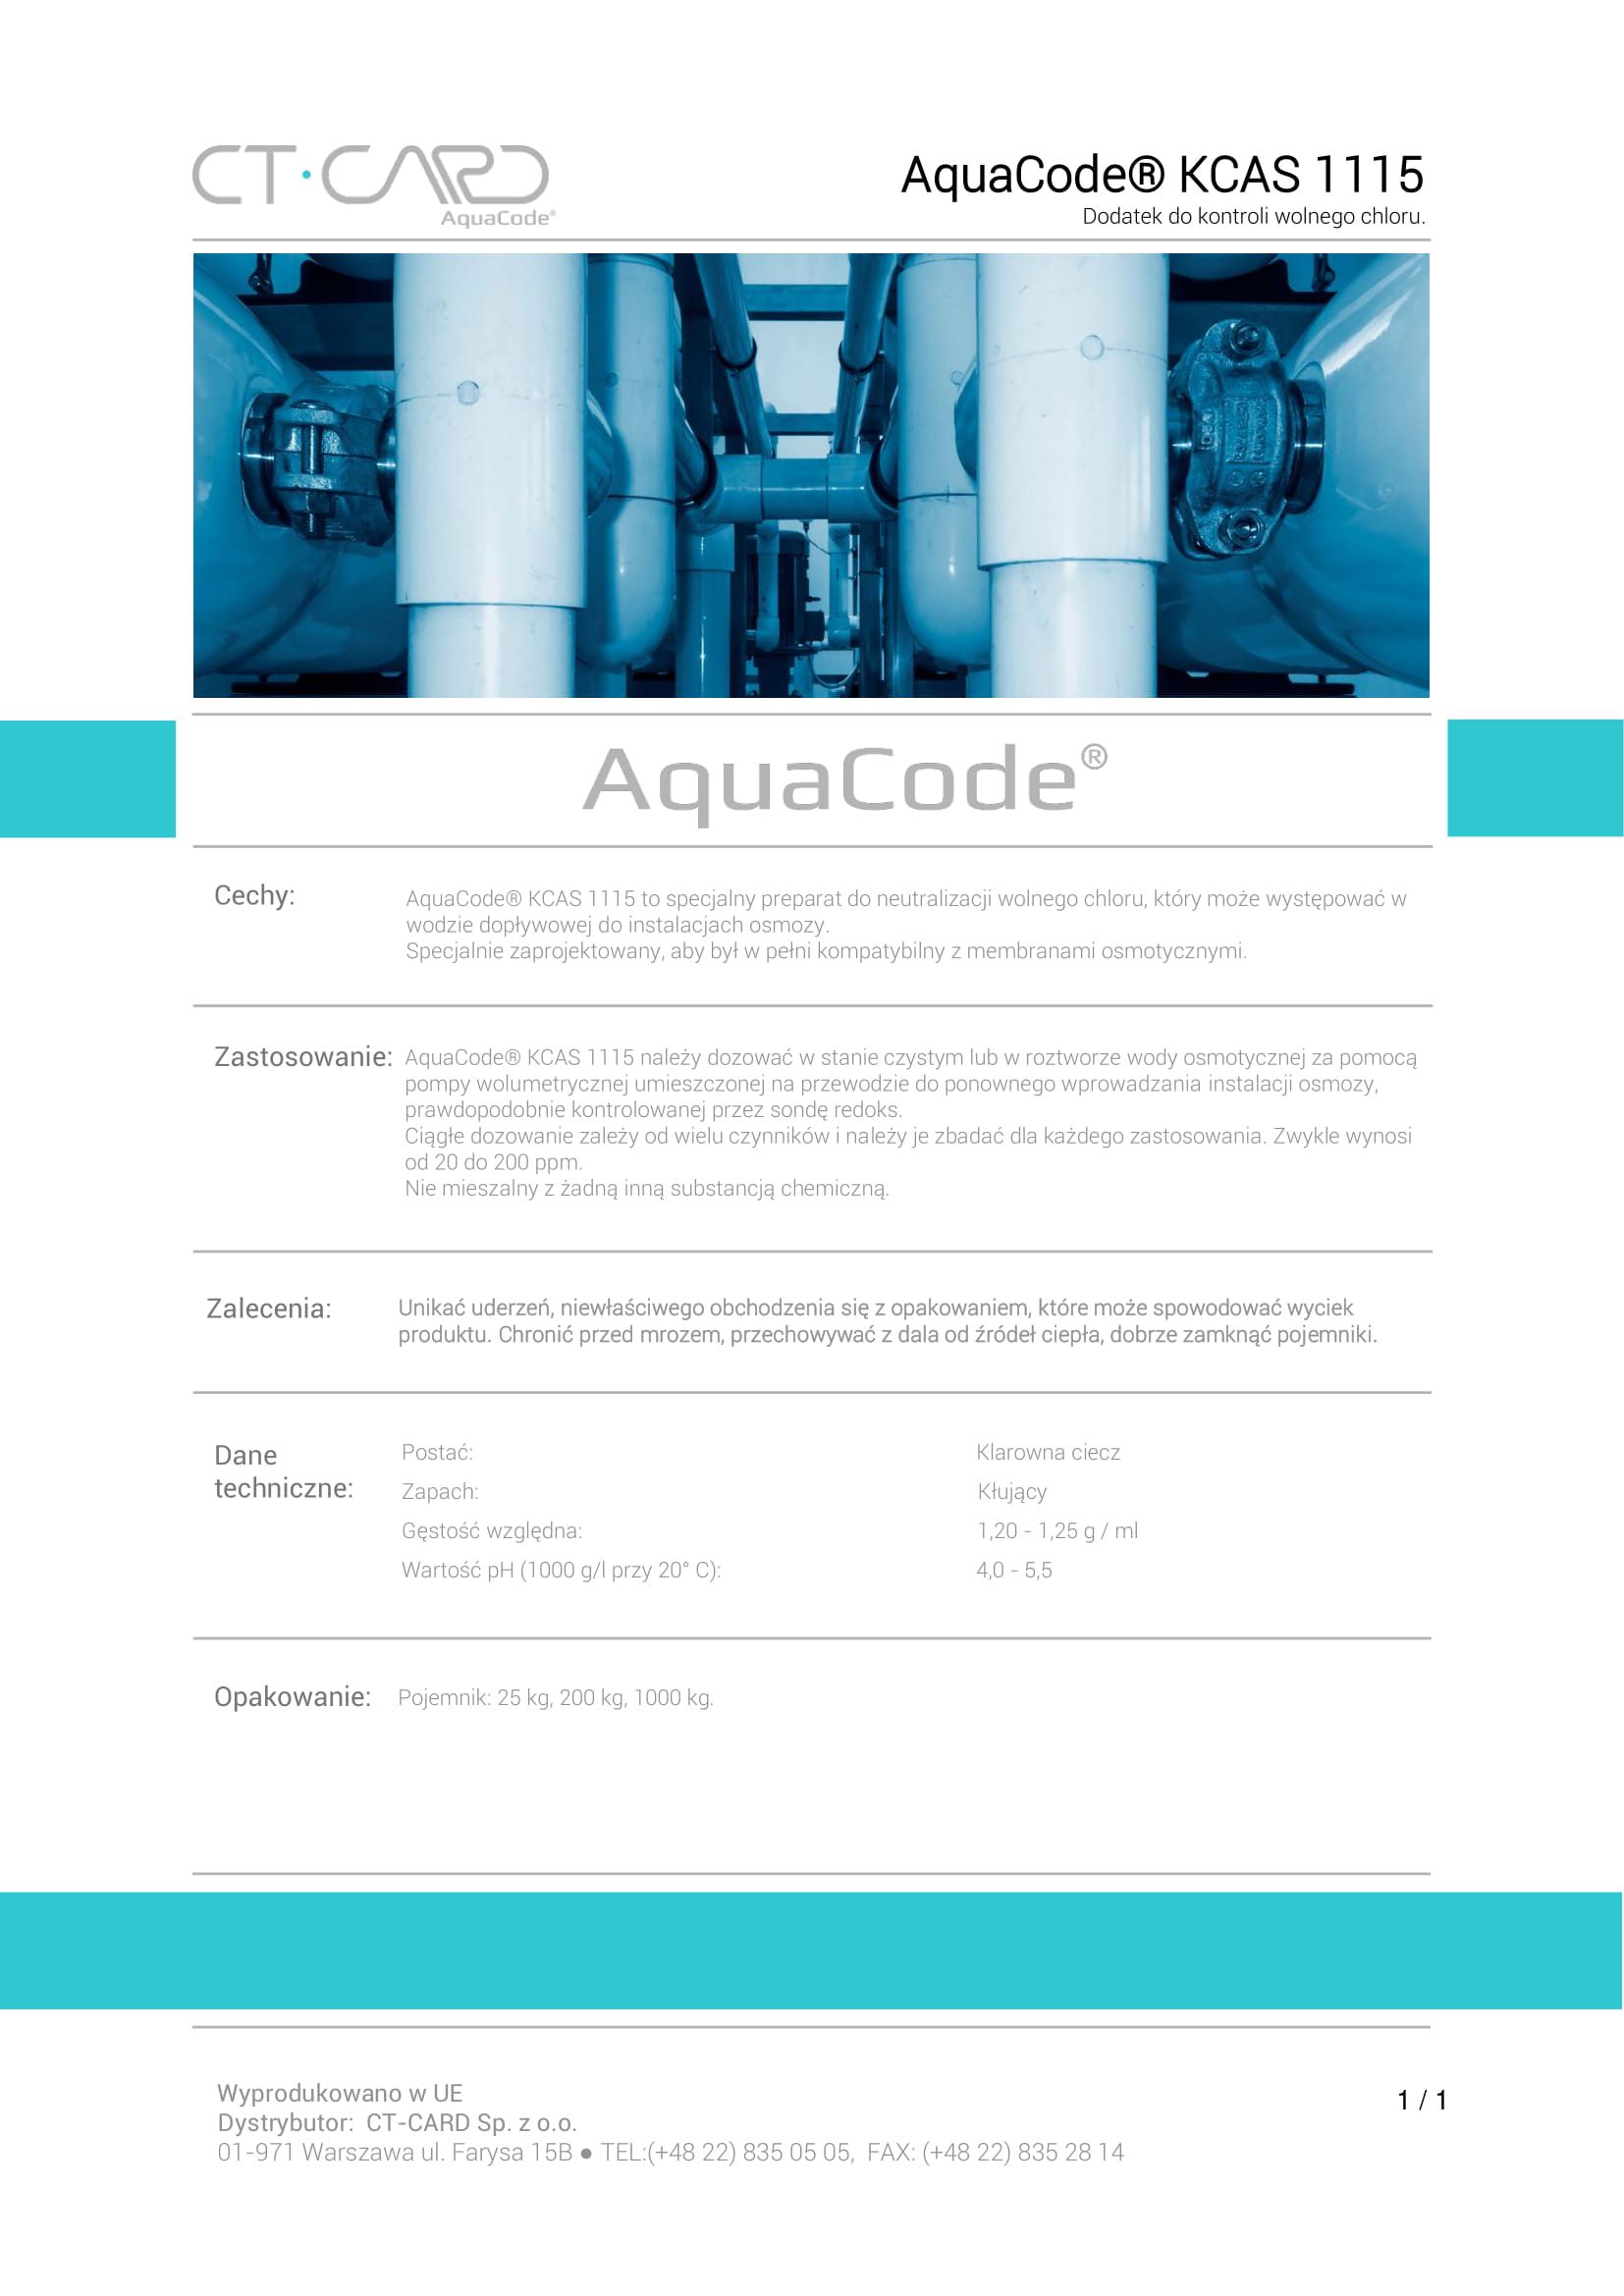 AquaCode_KCAS_1115-1